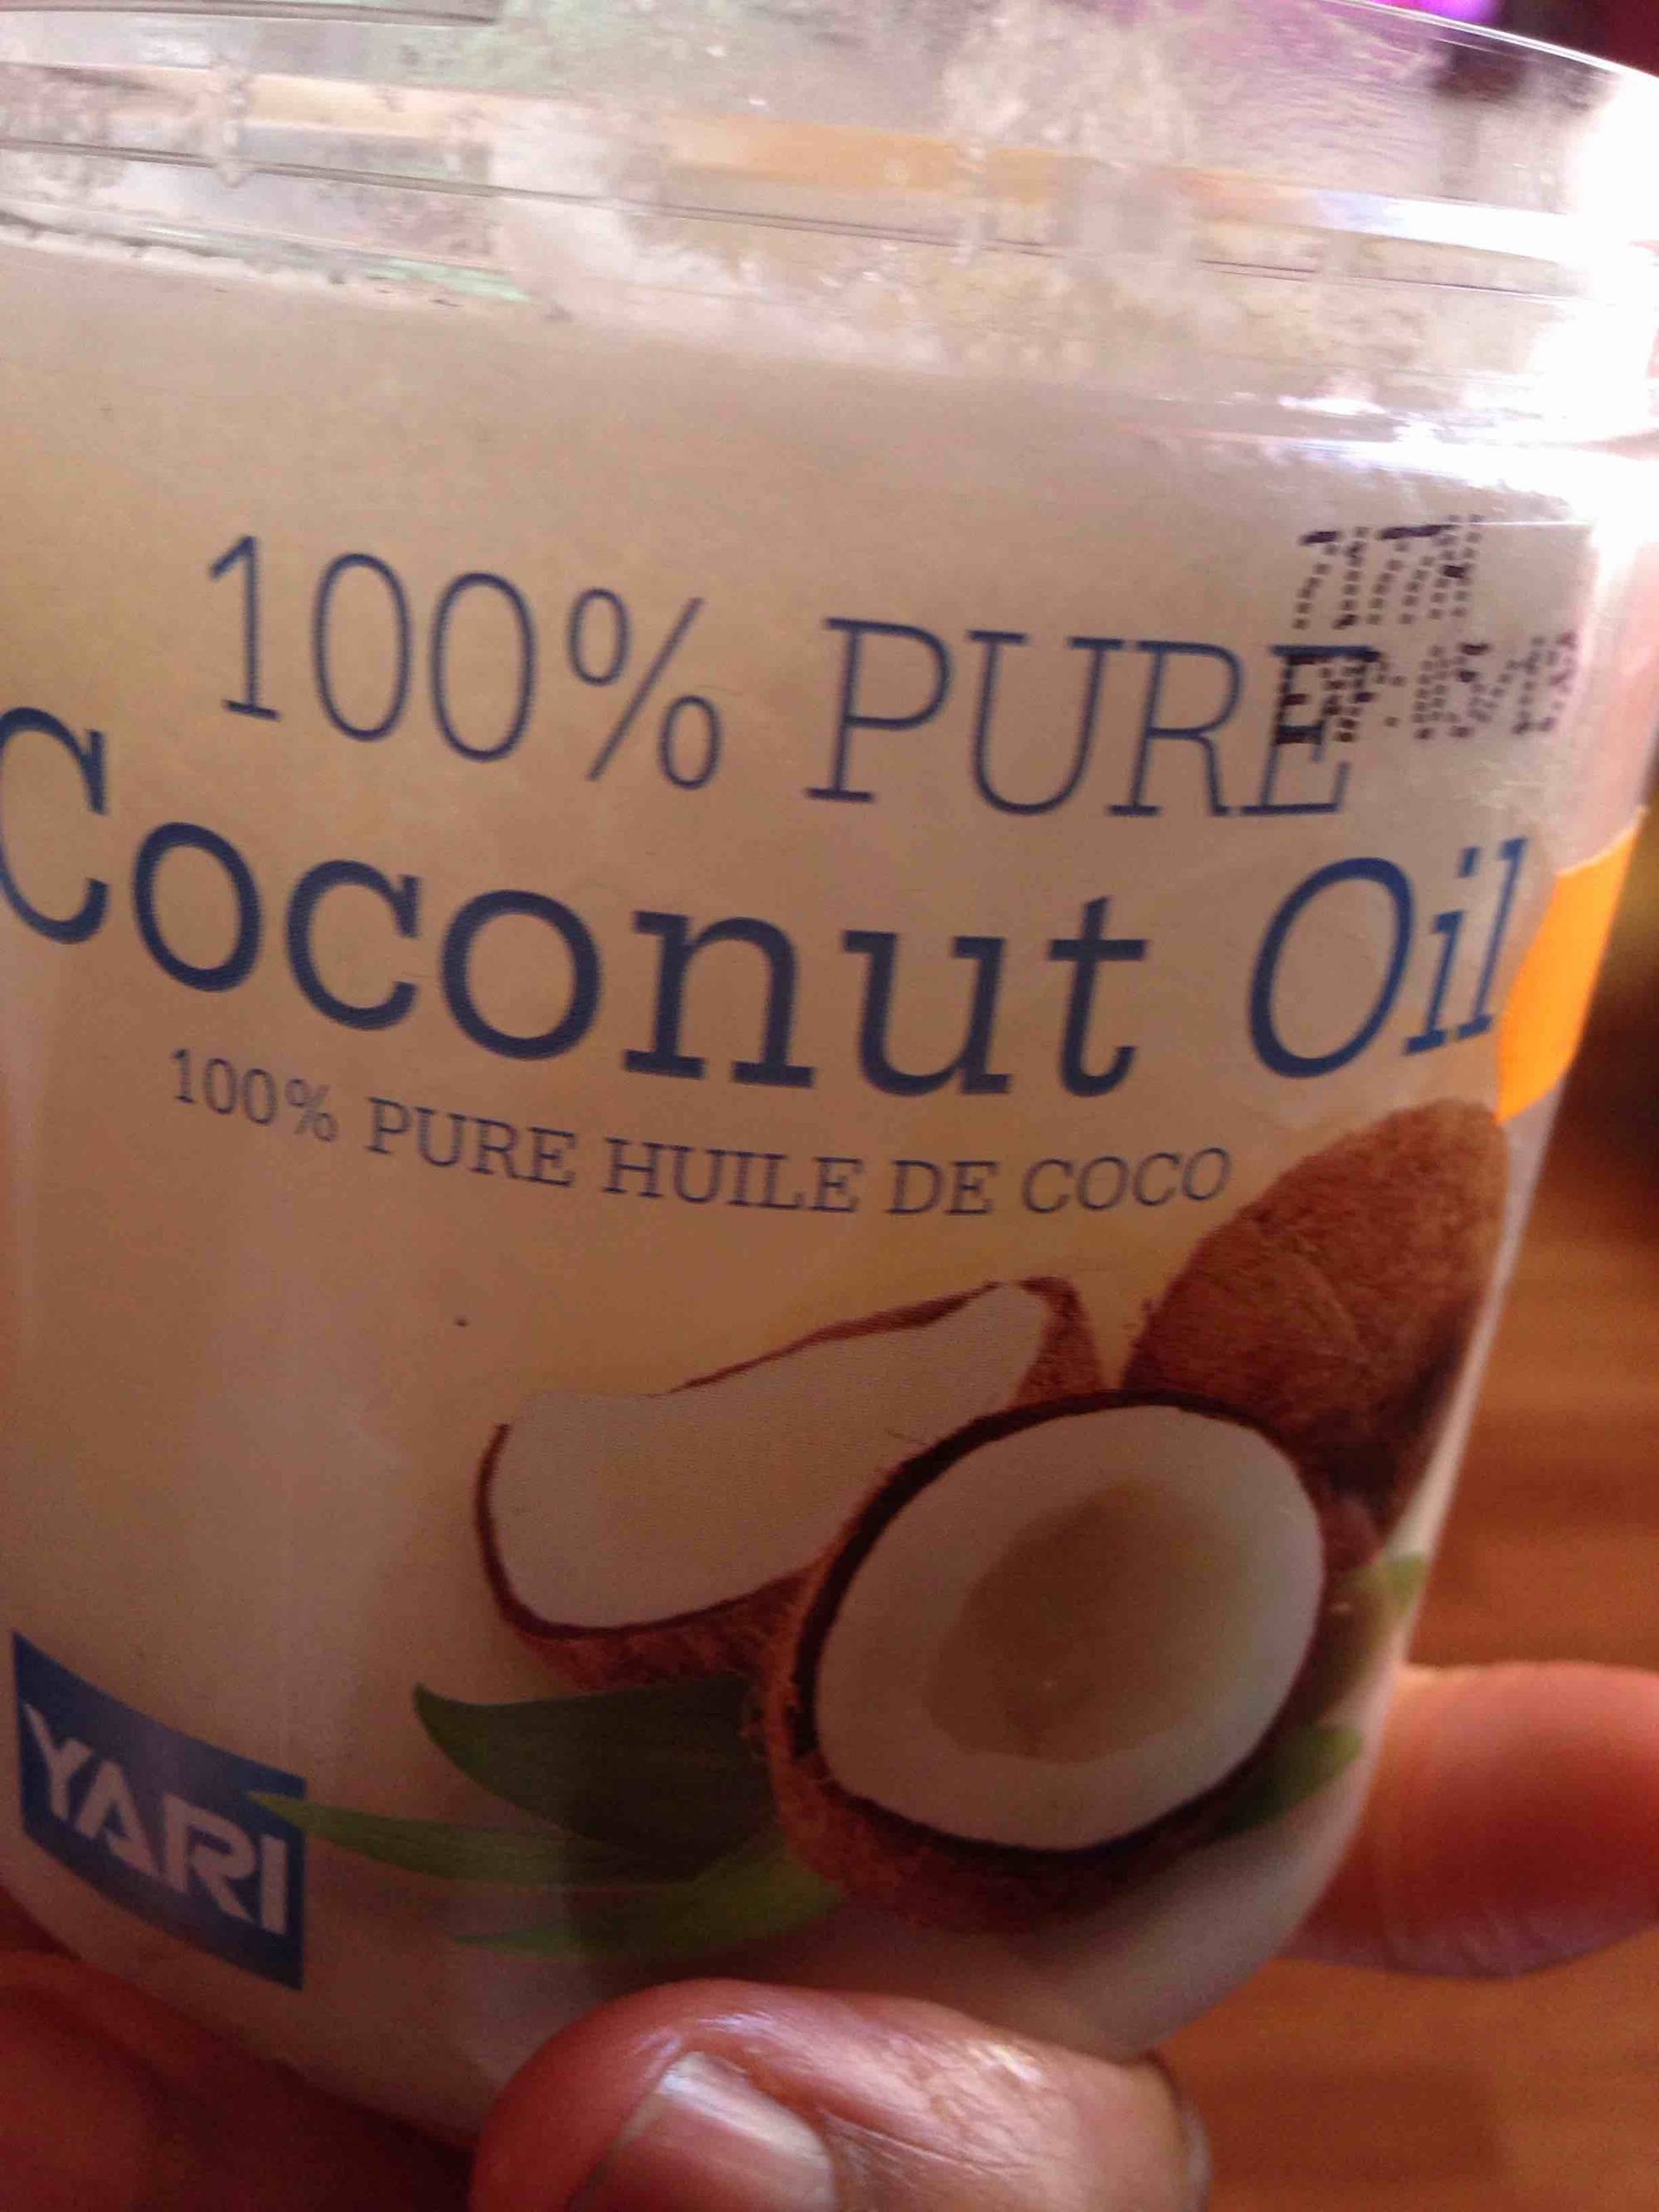 YARI - 100% pure huile de coco